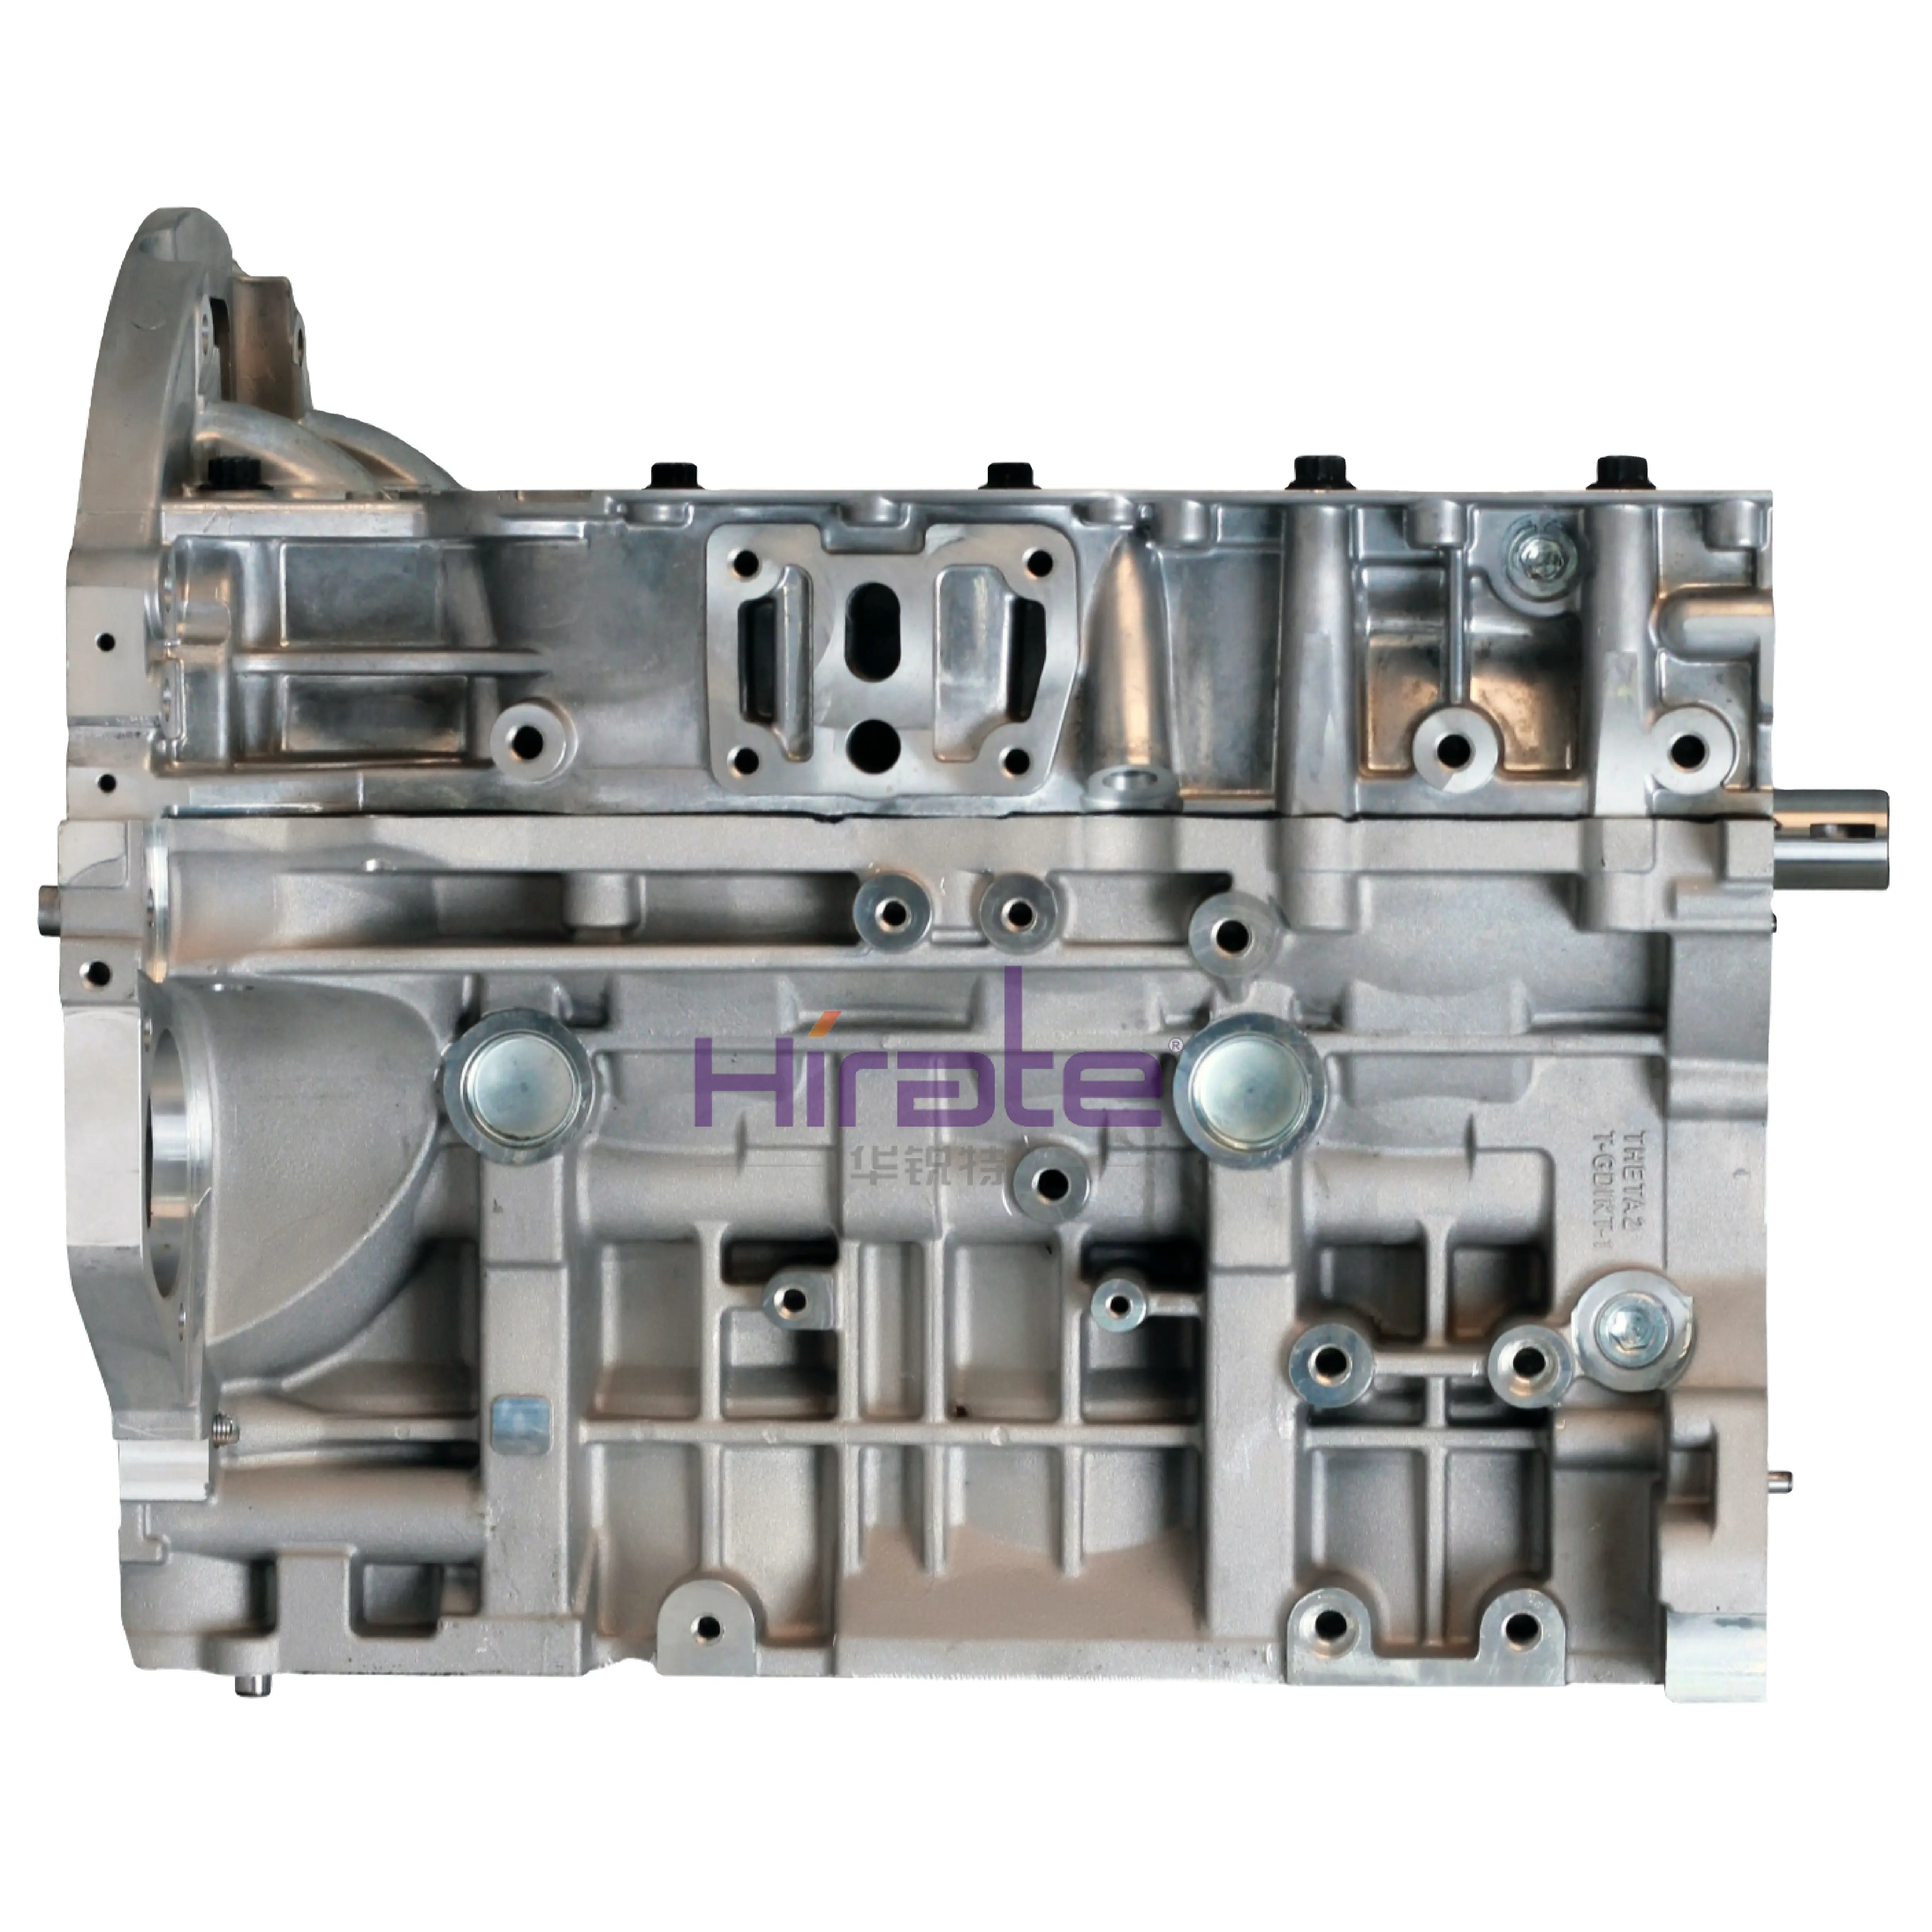 G4ke 공장 판매 각종 널리 이용되는 작은 엔진 디젤 엔진 전기 시작 디젤 엔진 차 엔진 기름